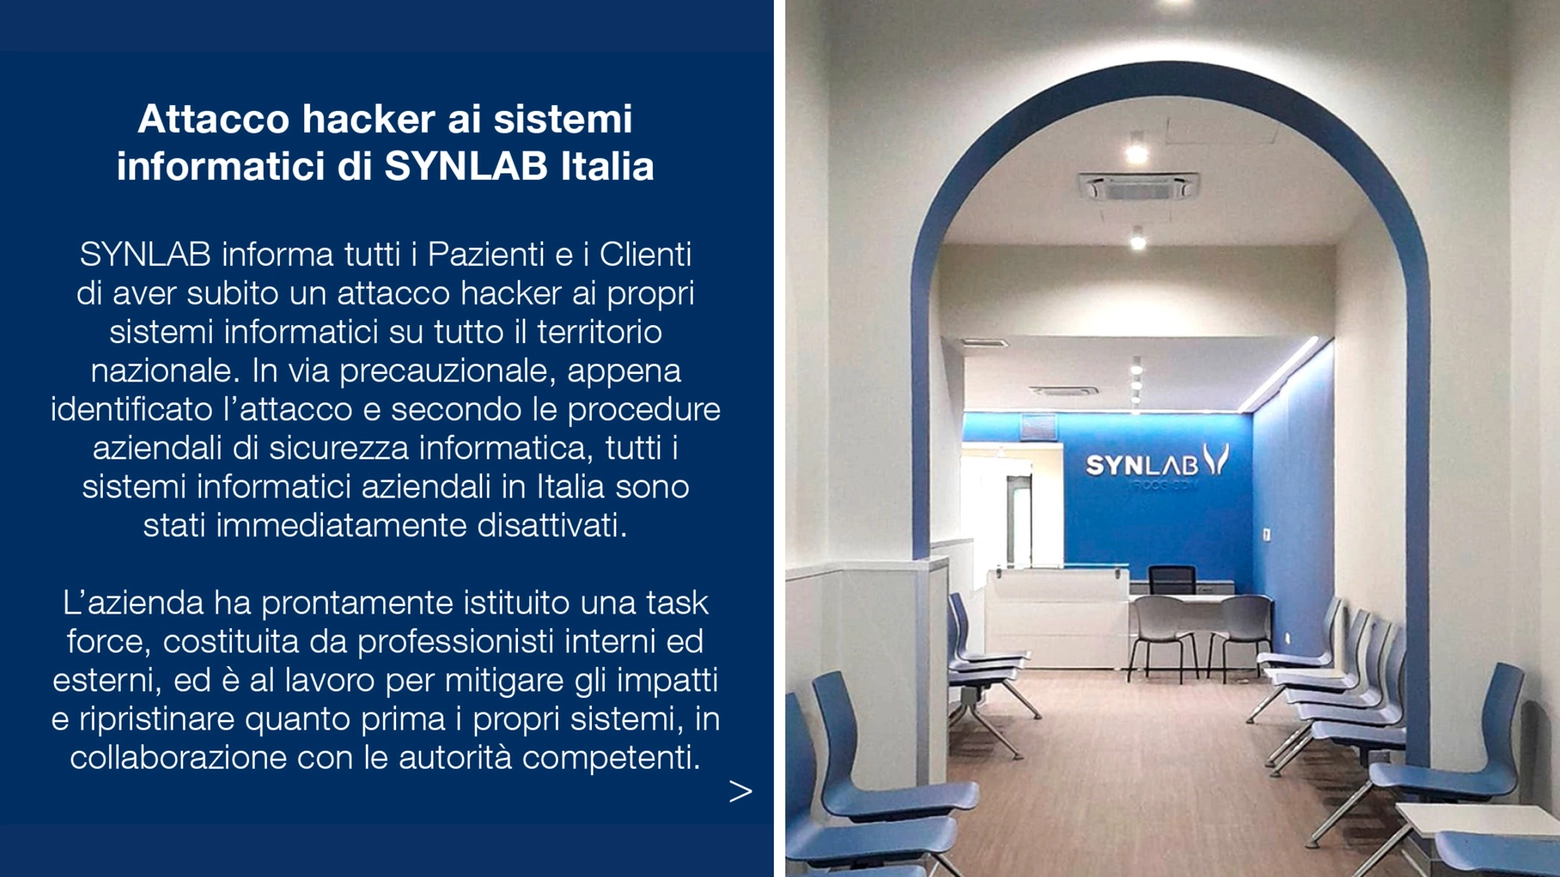 Attacco hacker alla rete informatica di Synlab